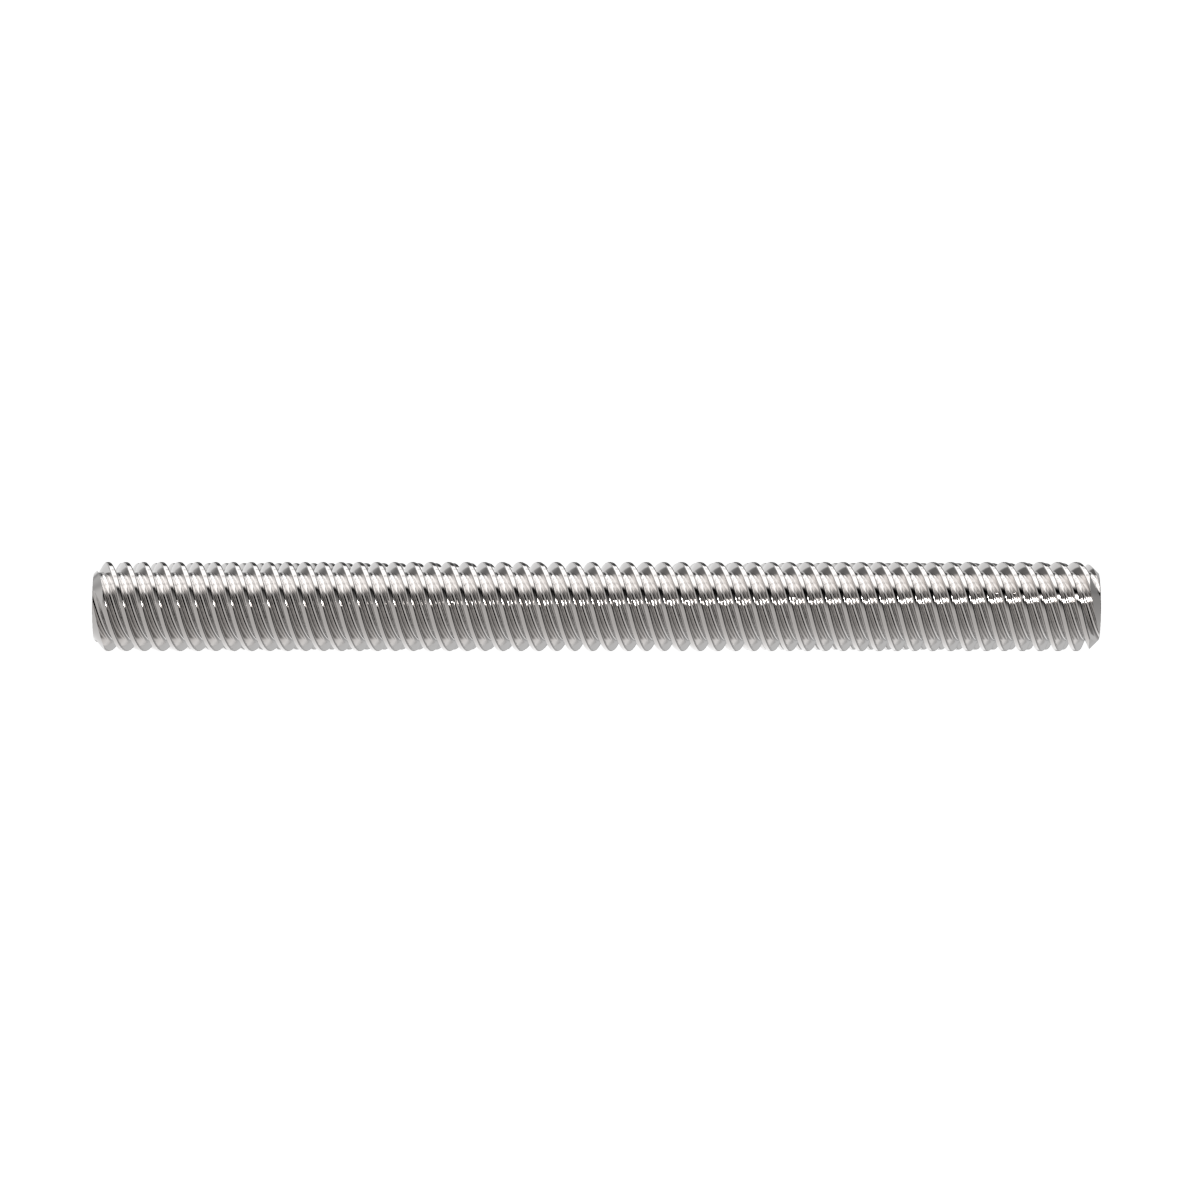 RH Acme threaded rod for lead screw CNC 3' 1 start 304050-3 5/8-8 x 36 inch 